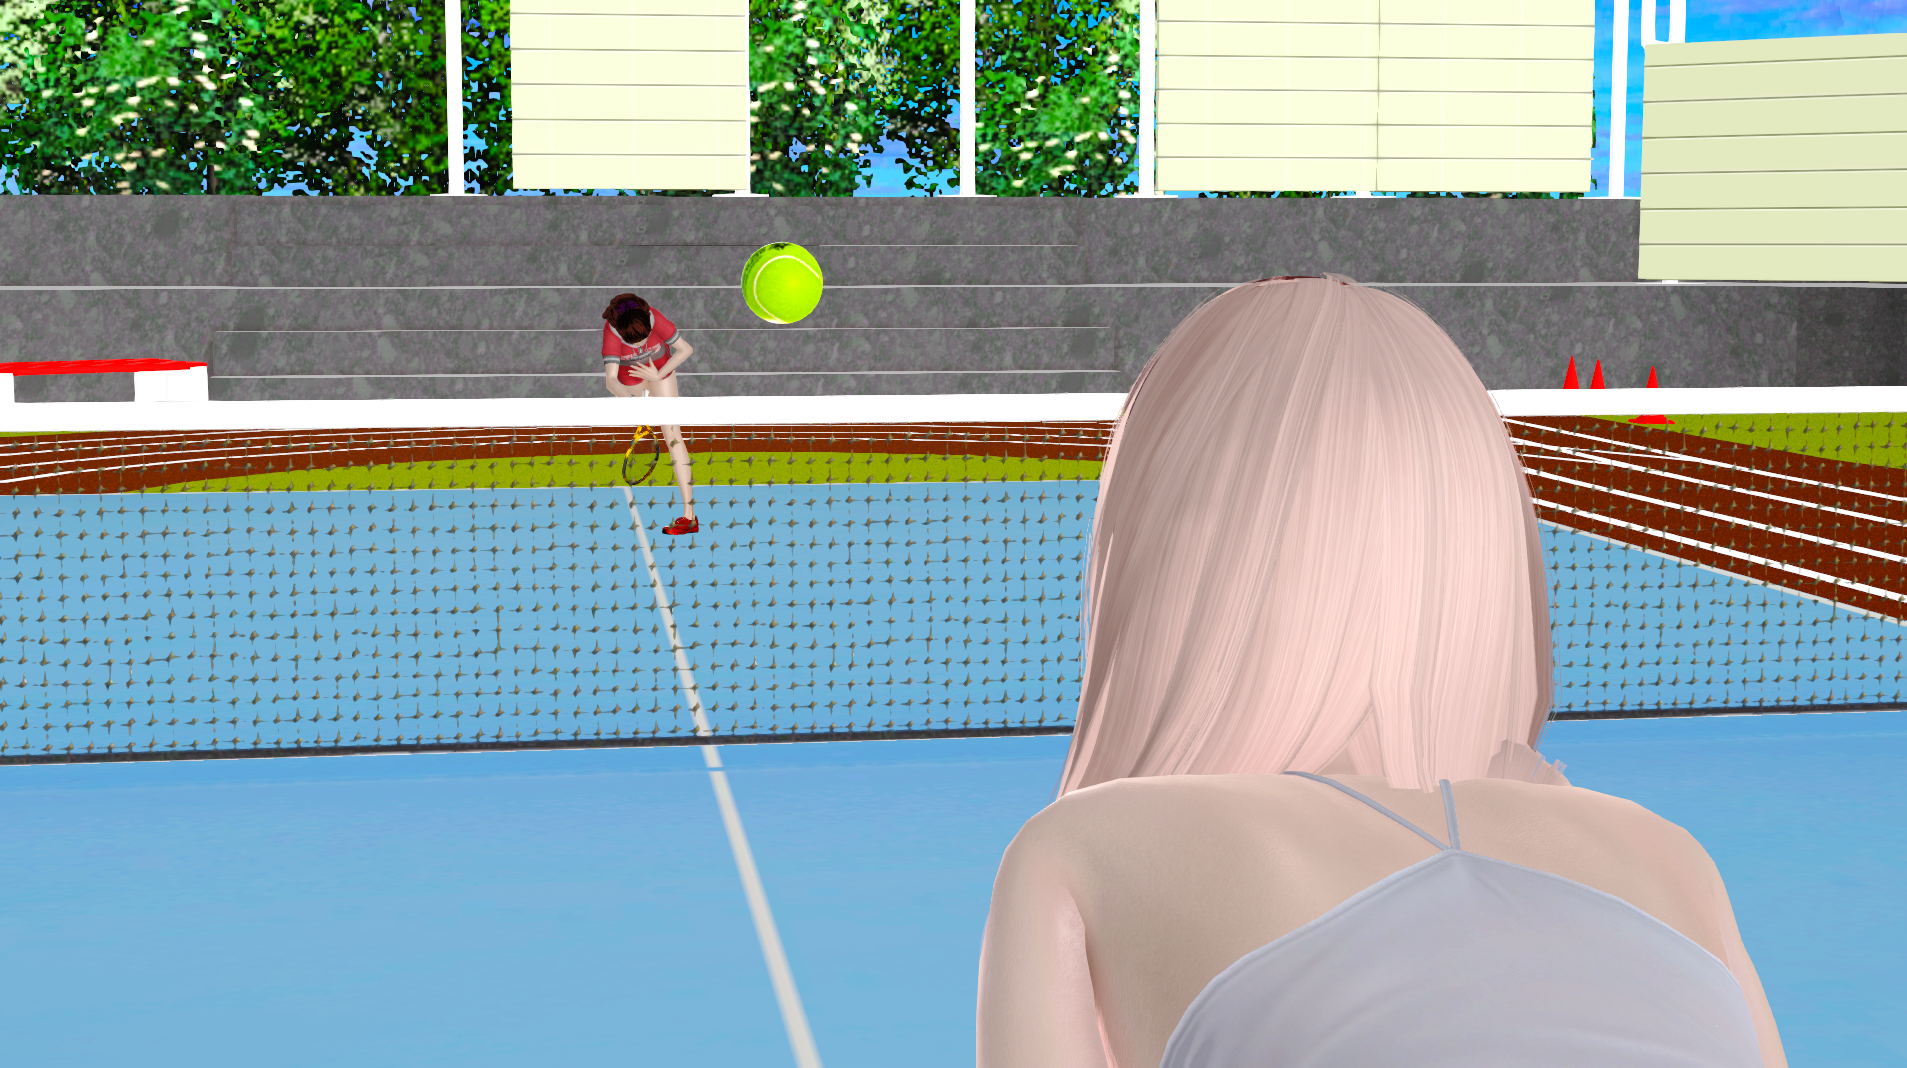 小夜的日常篇1：屈辱网球 Saya Daily1: Tenni 图21